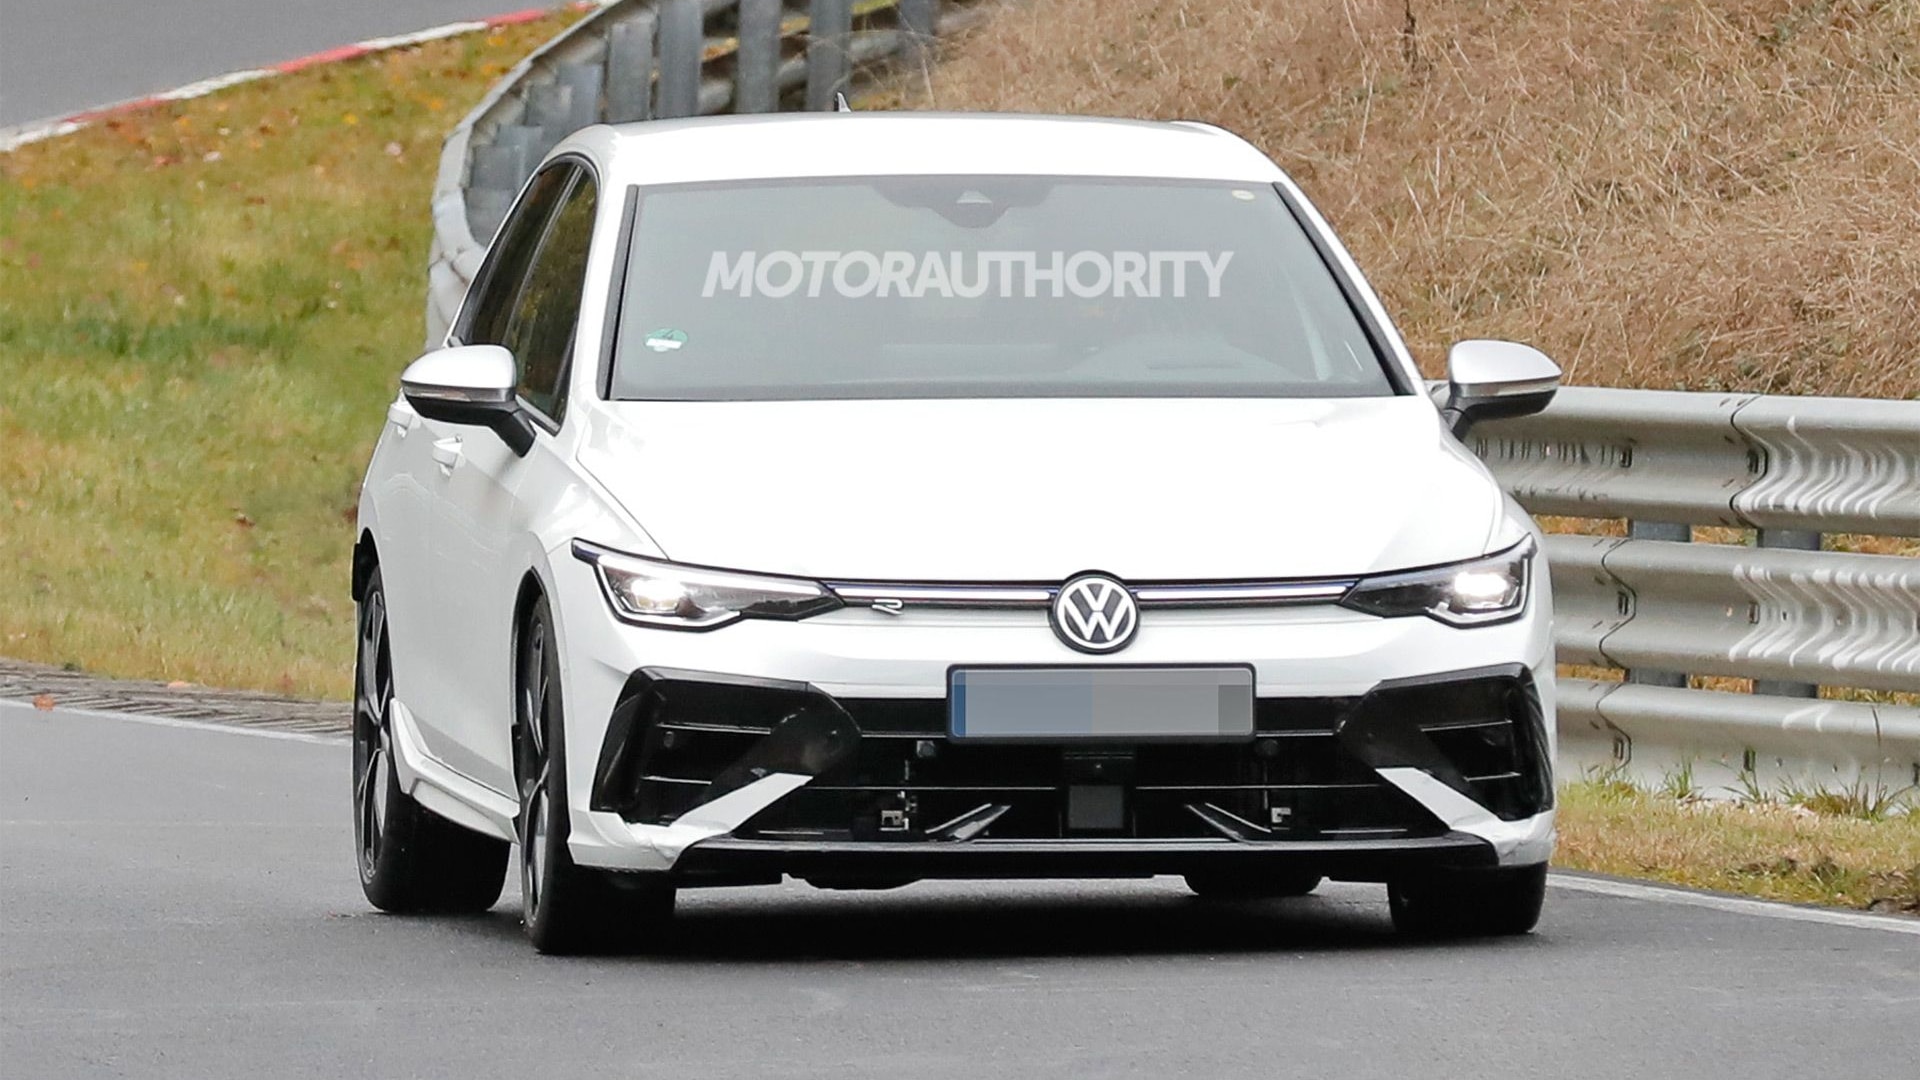 2025 Volkswagen Golf R facelift spy shots - Photo credit: Baldauf